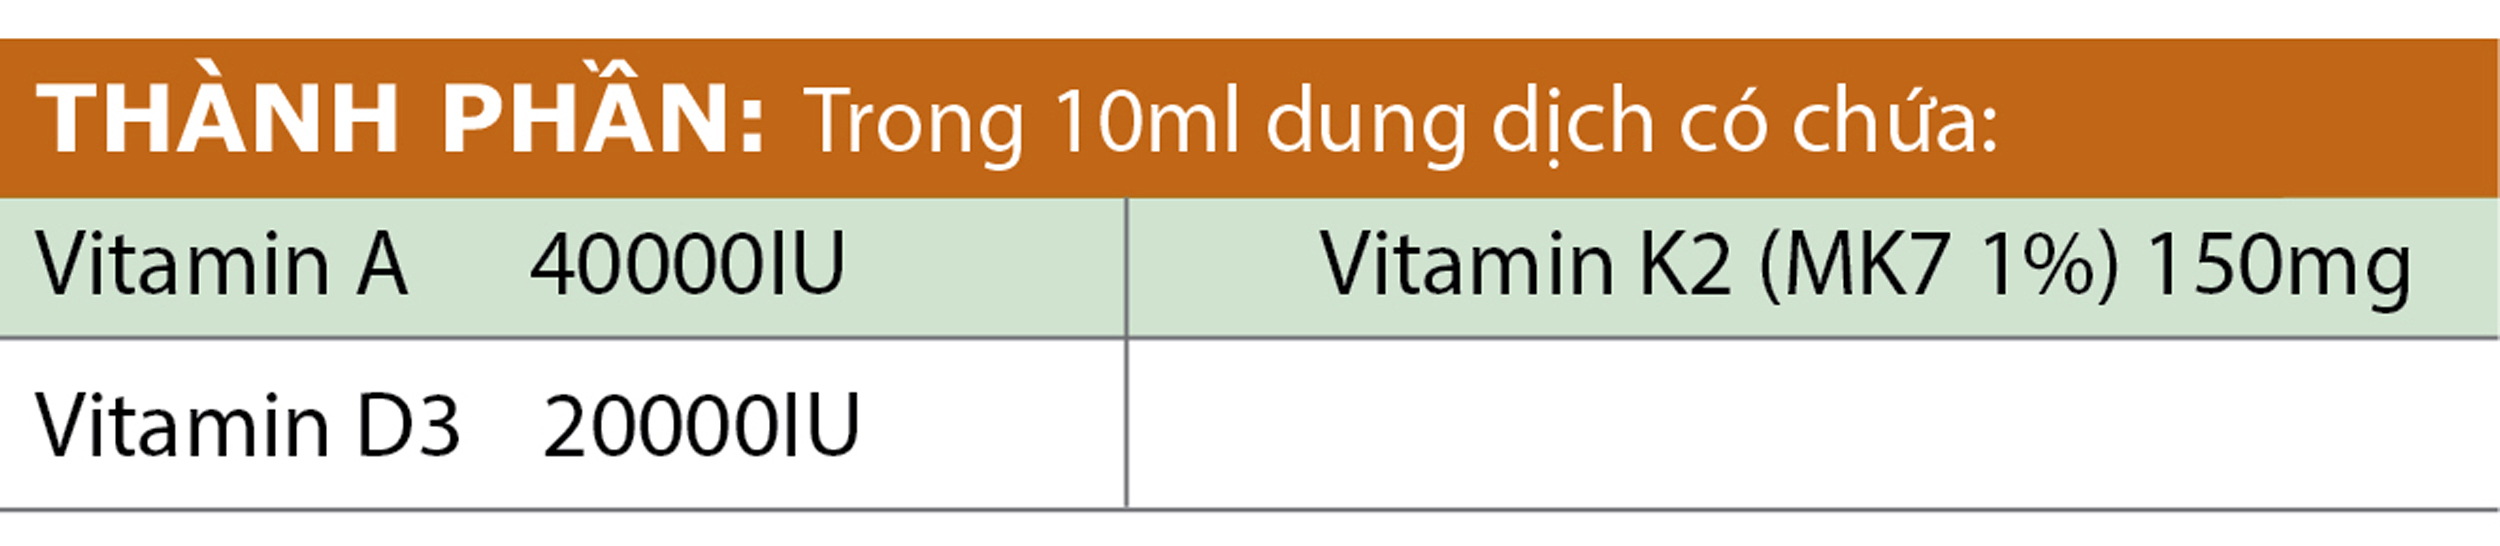 Nhỏ Giọt Vitamin D3 Tăng Hấp Thu Canxi Cho Trẻ Sơ Sinh Drops D3&K2-Mk7 Babywin VIPHAR Chai 10ml